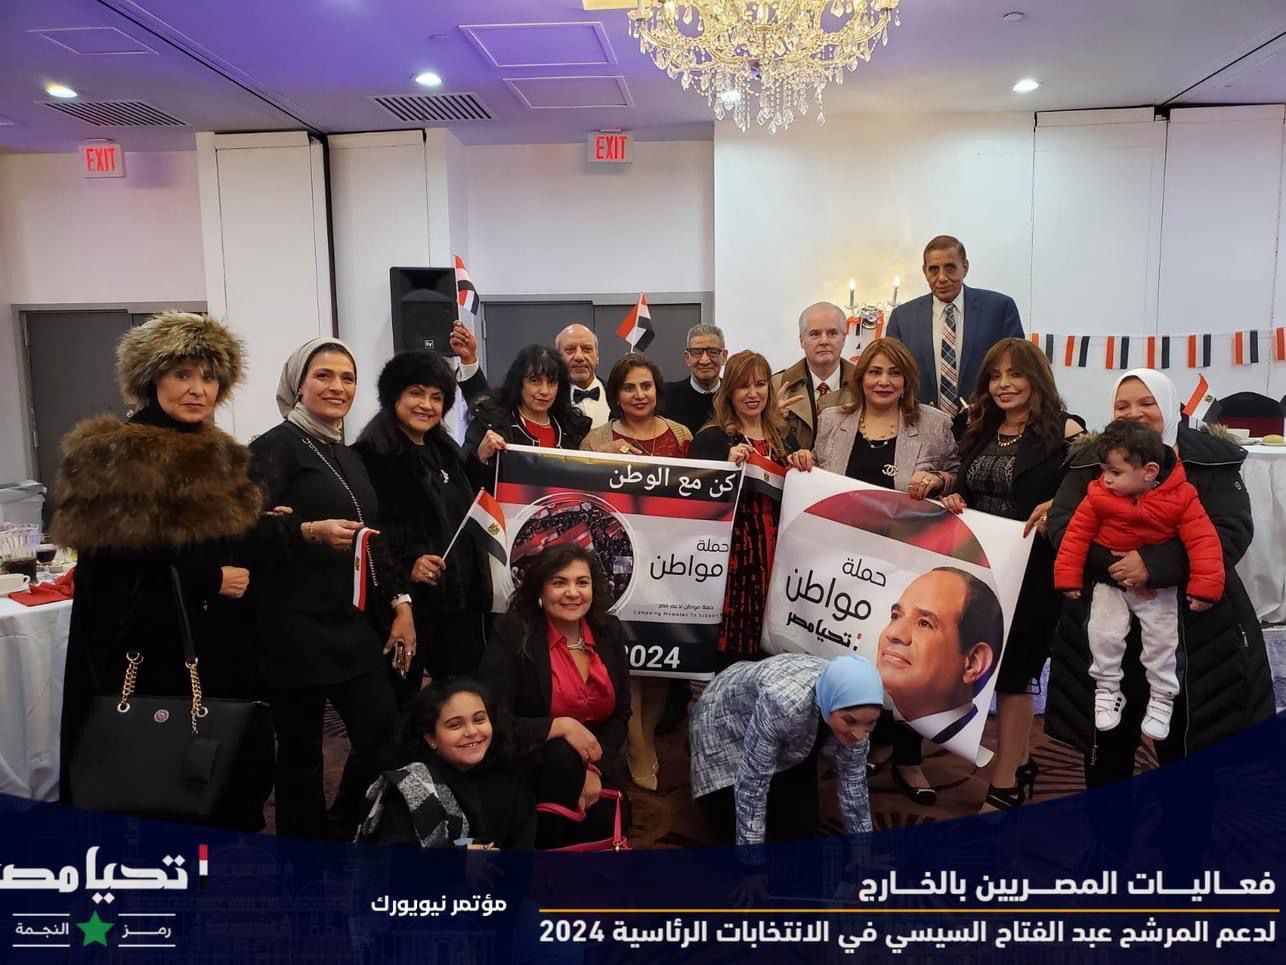 - المصريون فى الخارج يؤكدون دعمهم للرئيس السيسي